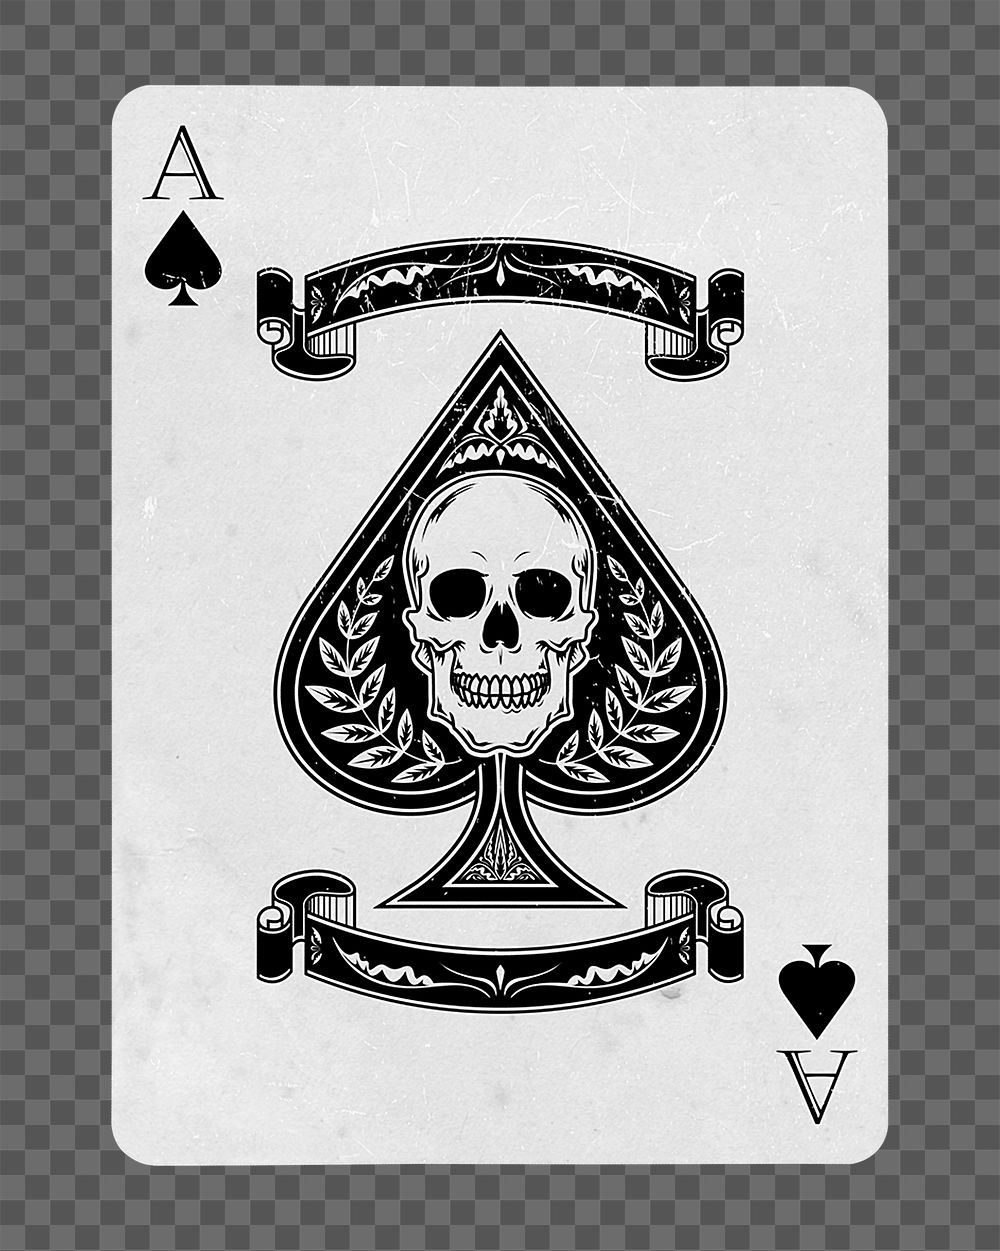 Ace spades skull png sticker, transparent background